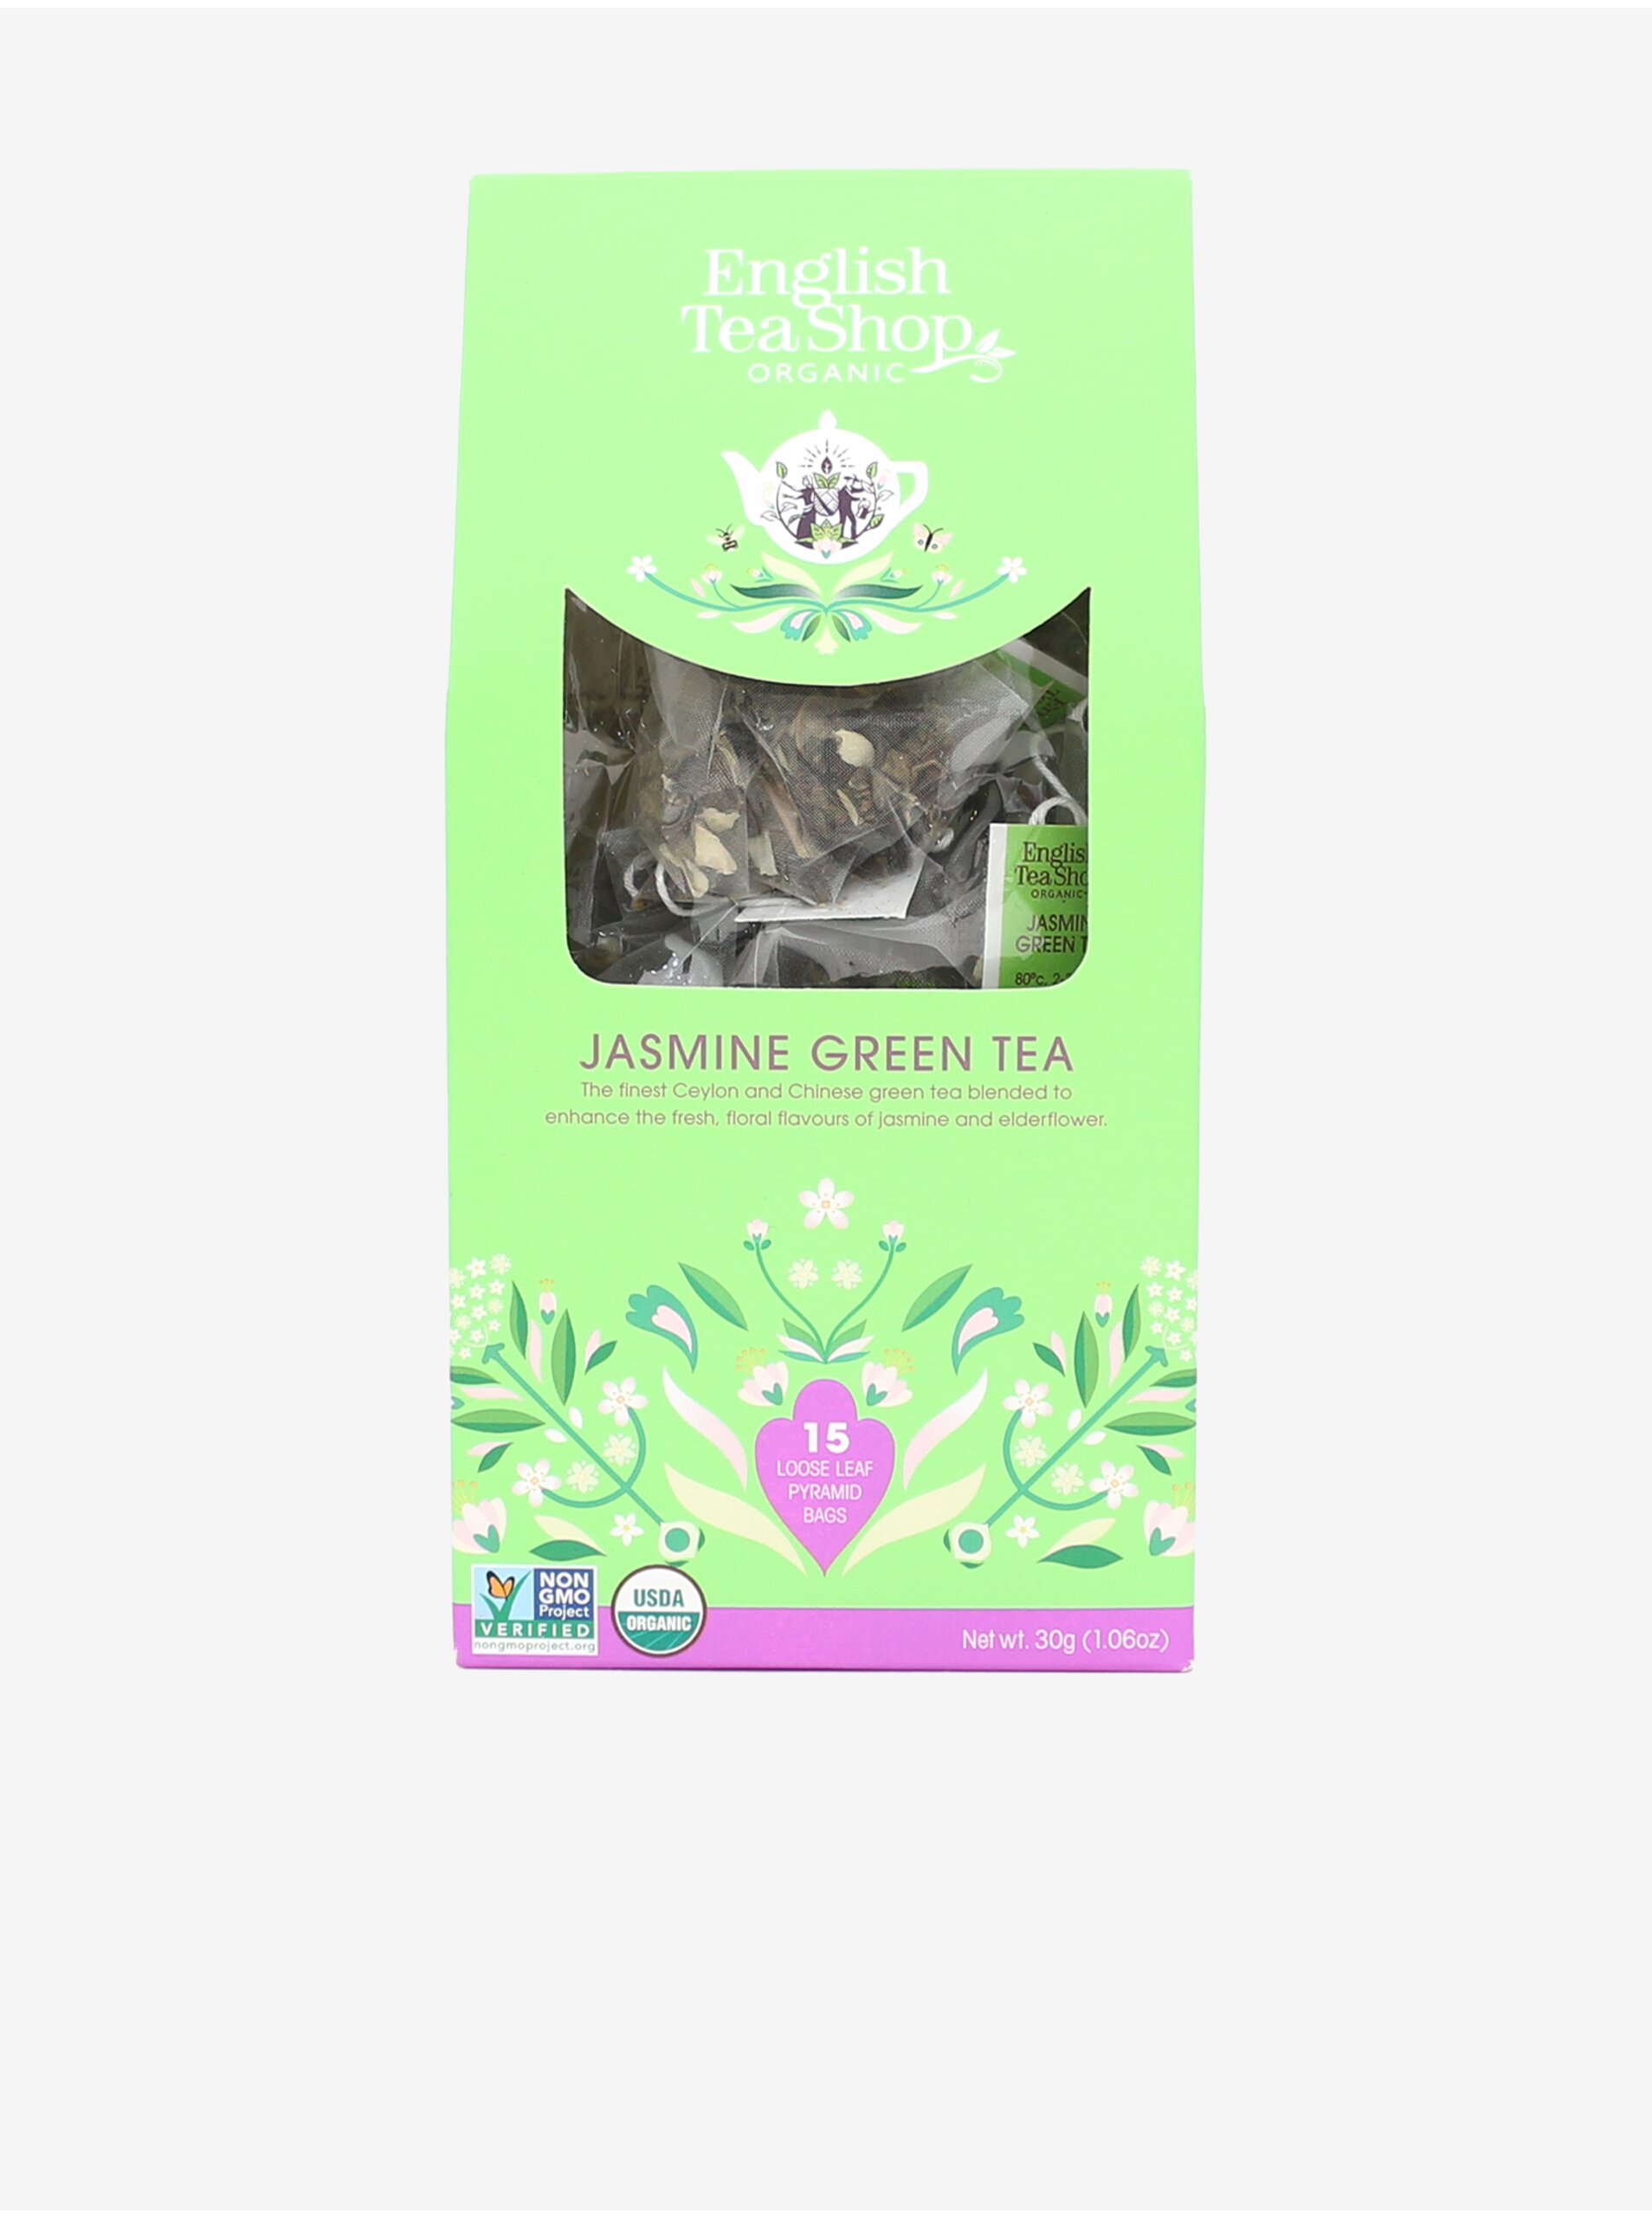 Lacno Zelený čaj s jazmínom a bazalkou v bio kvalite English Tea Shop (15ks)